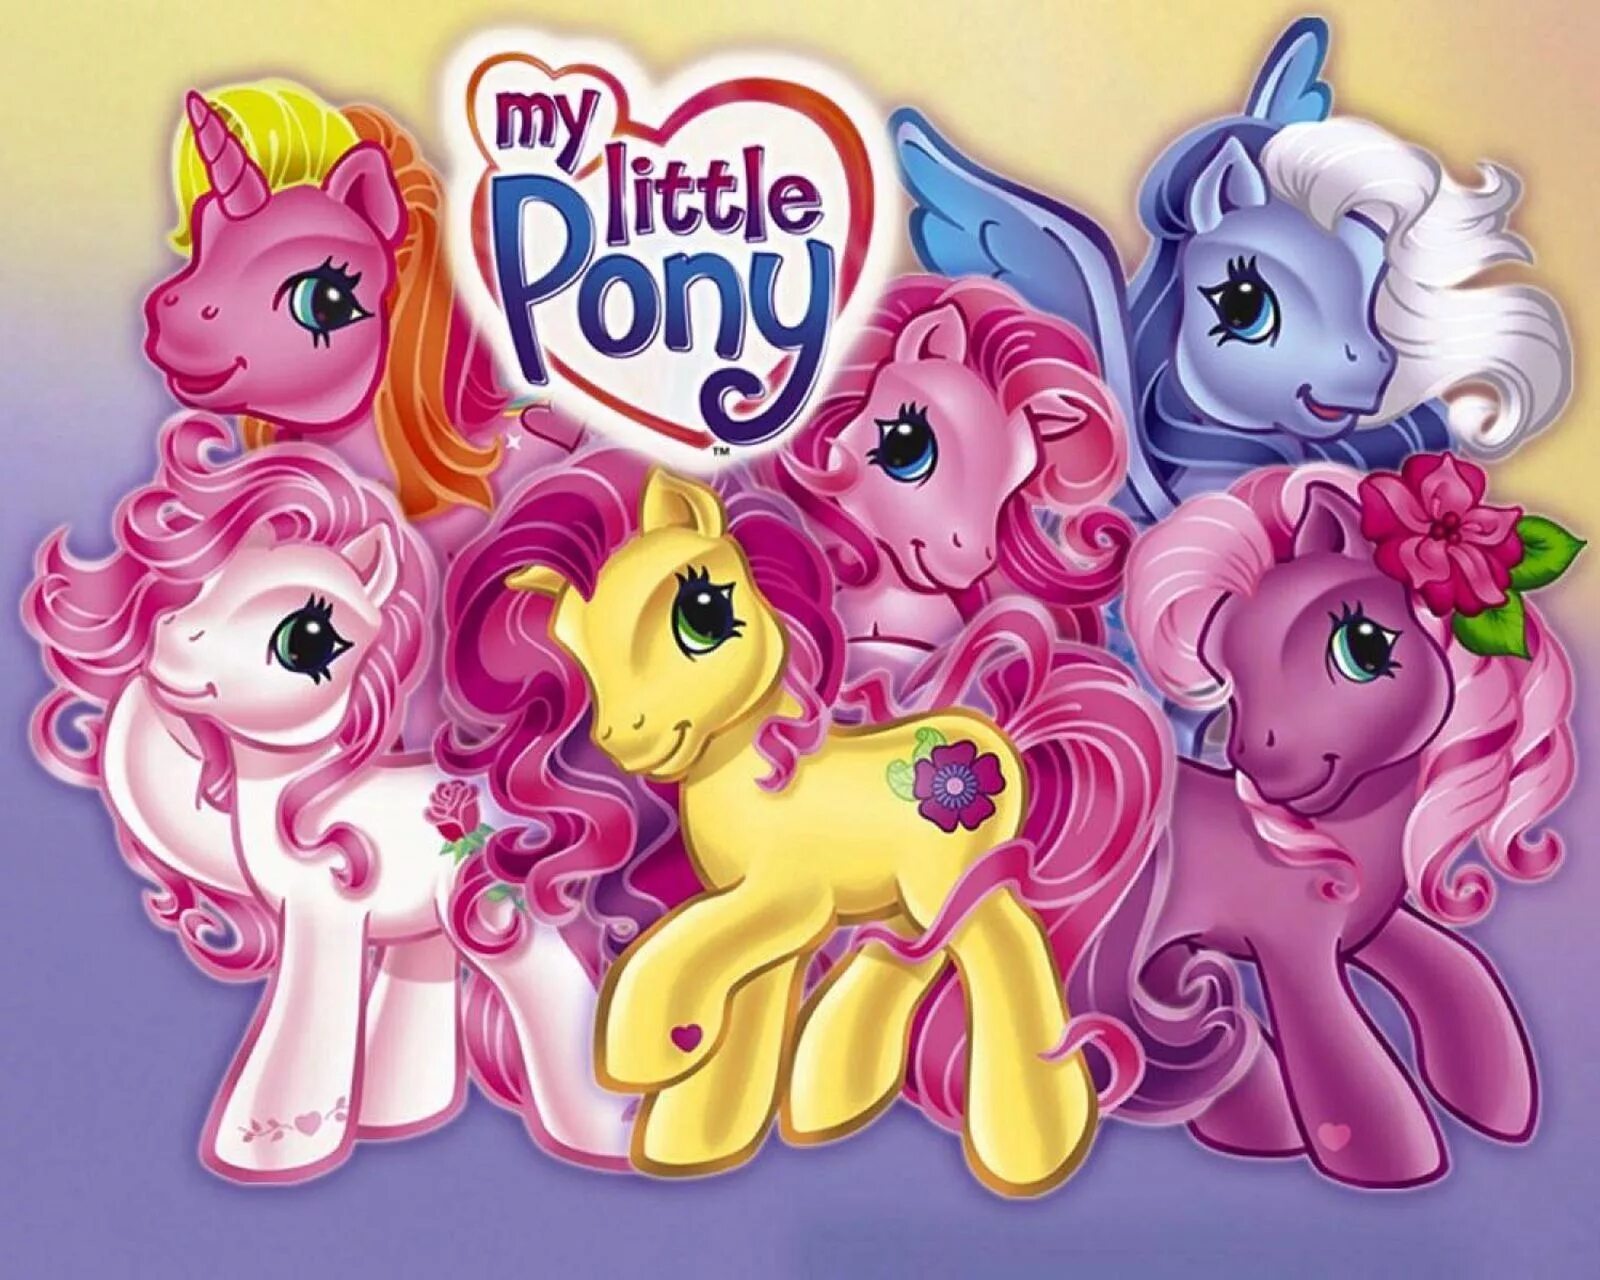 My little pony делать. My little Pony g3. My little Pony Ponyville g3 игрушки.